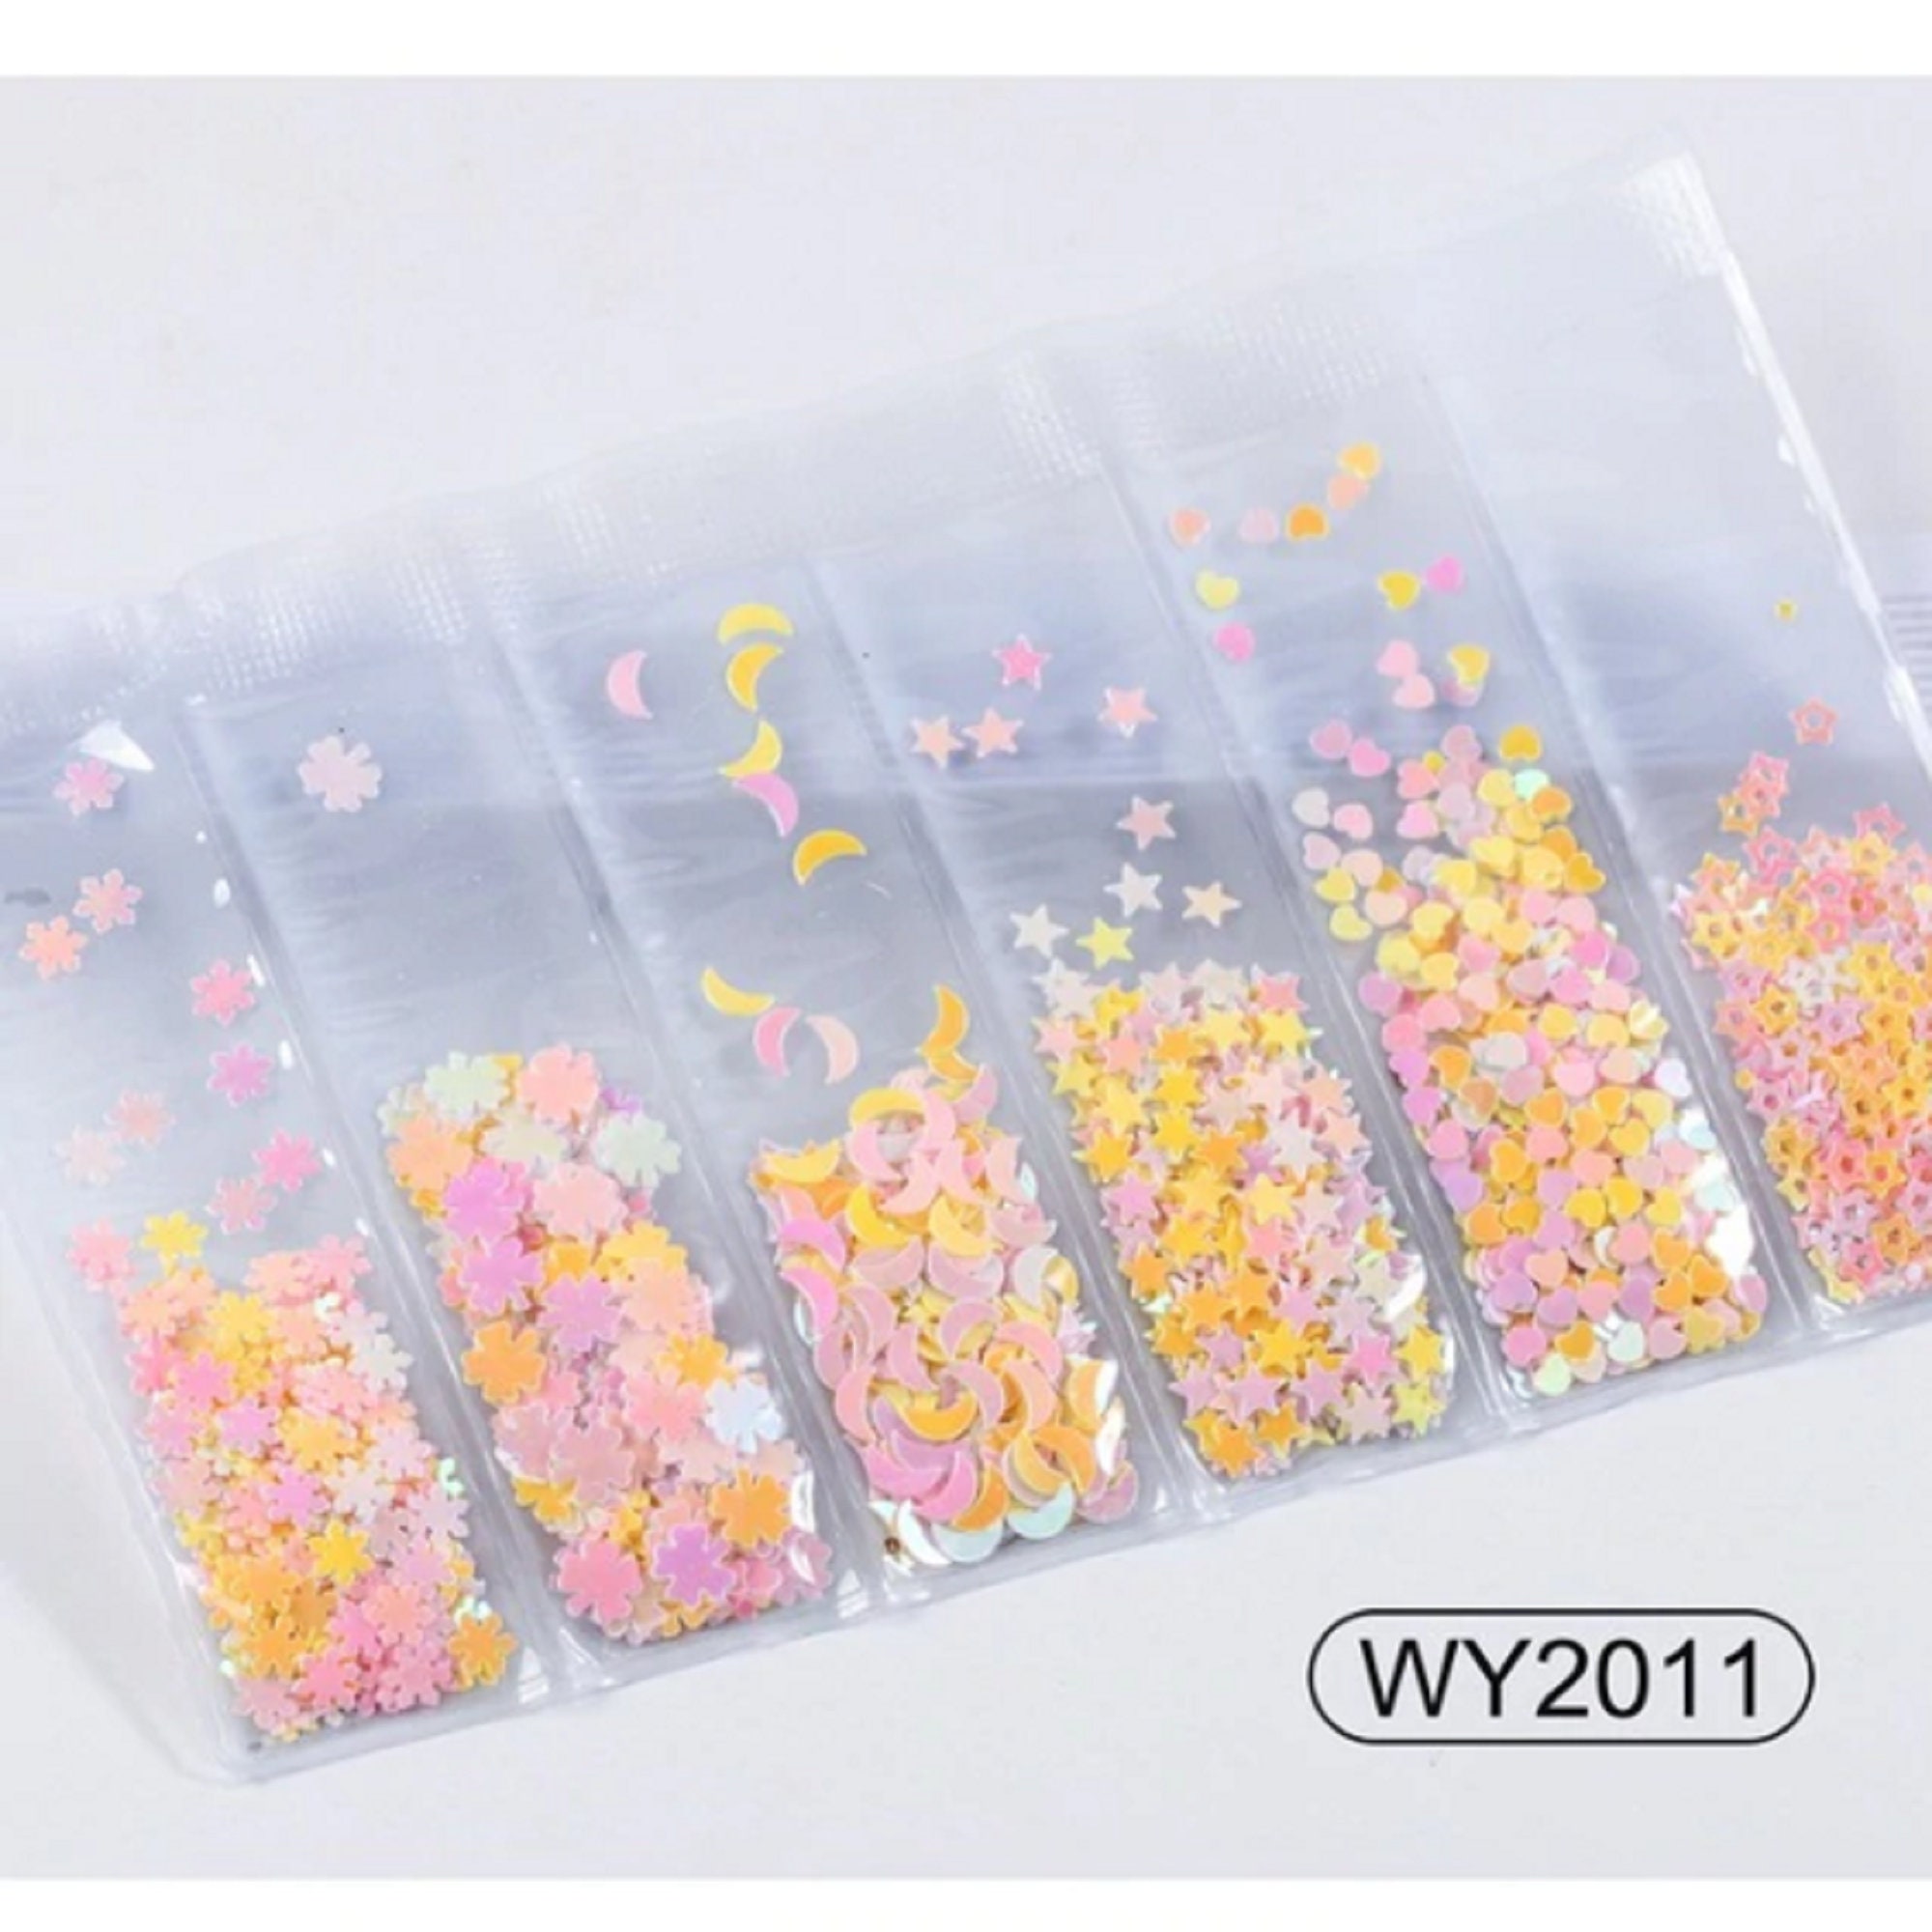 10g/bag Mixed Nail Glitter Powder Sequins Colorful Nail Flakes | Etsy